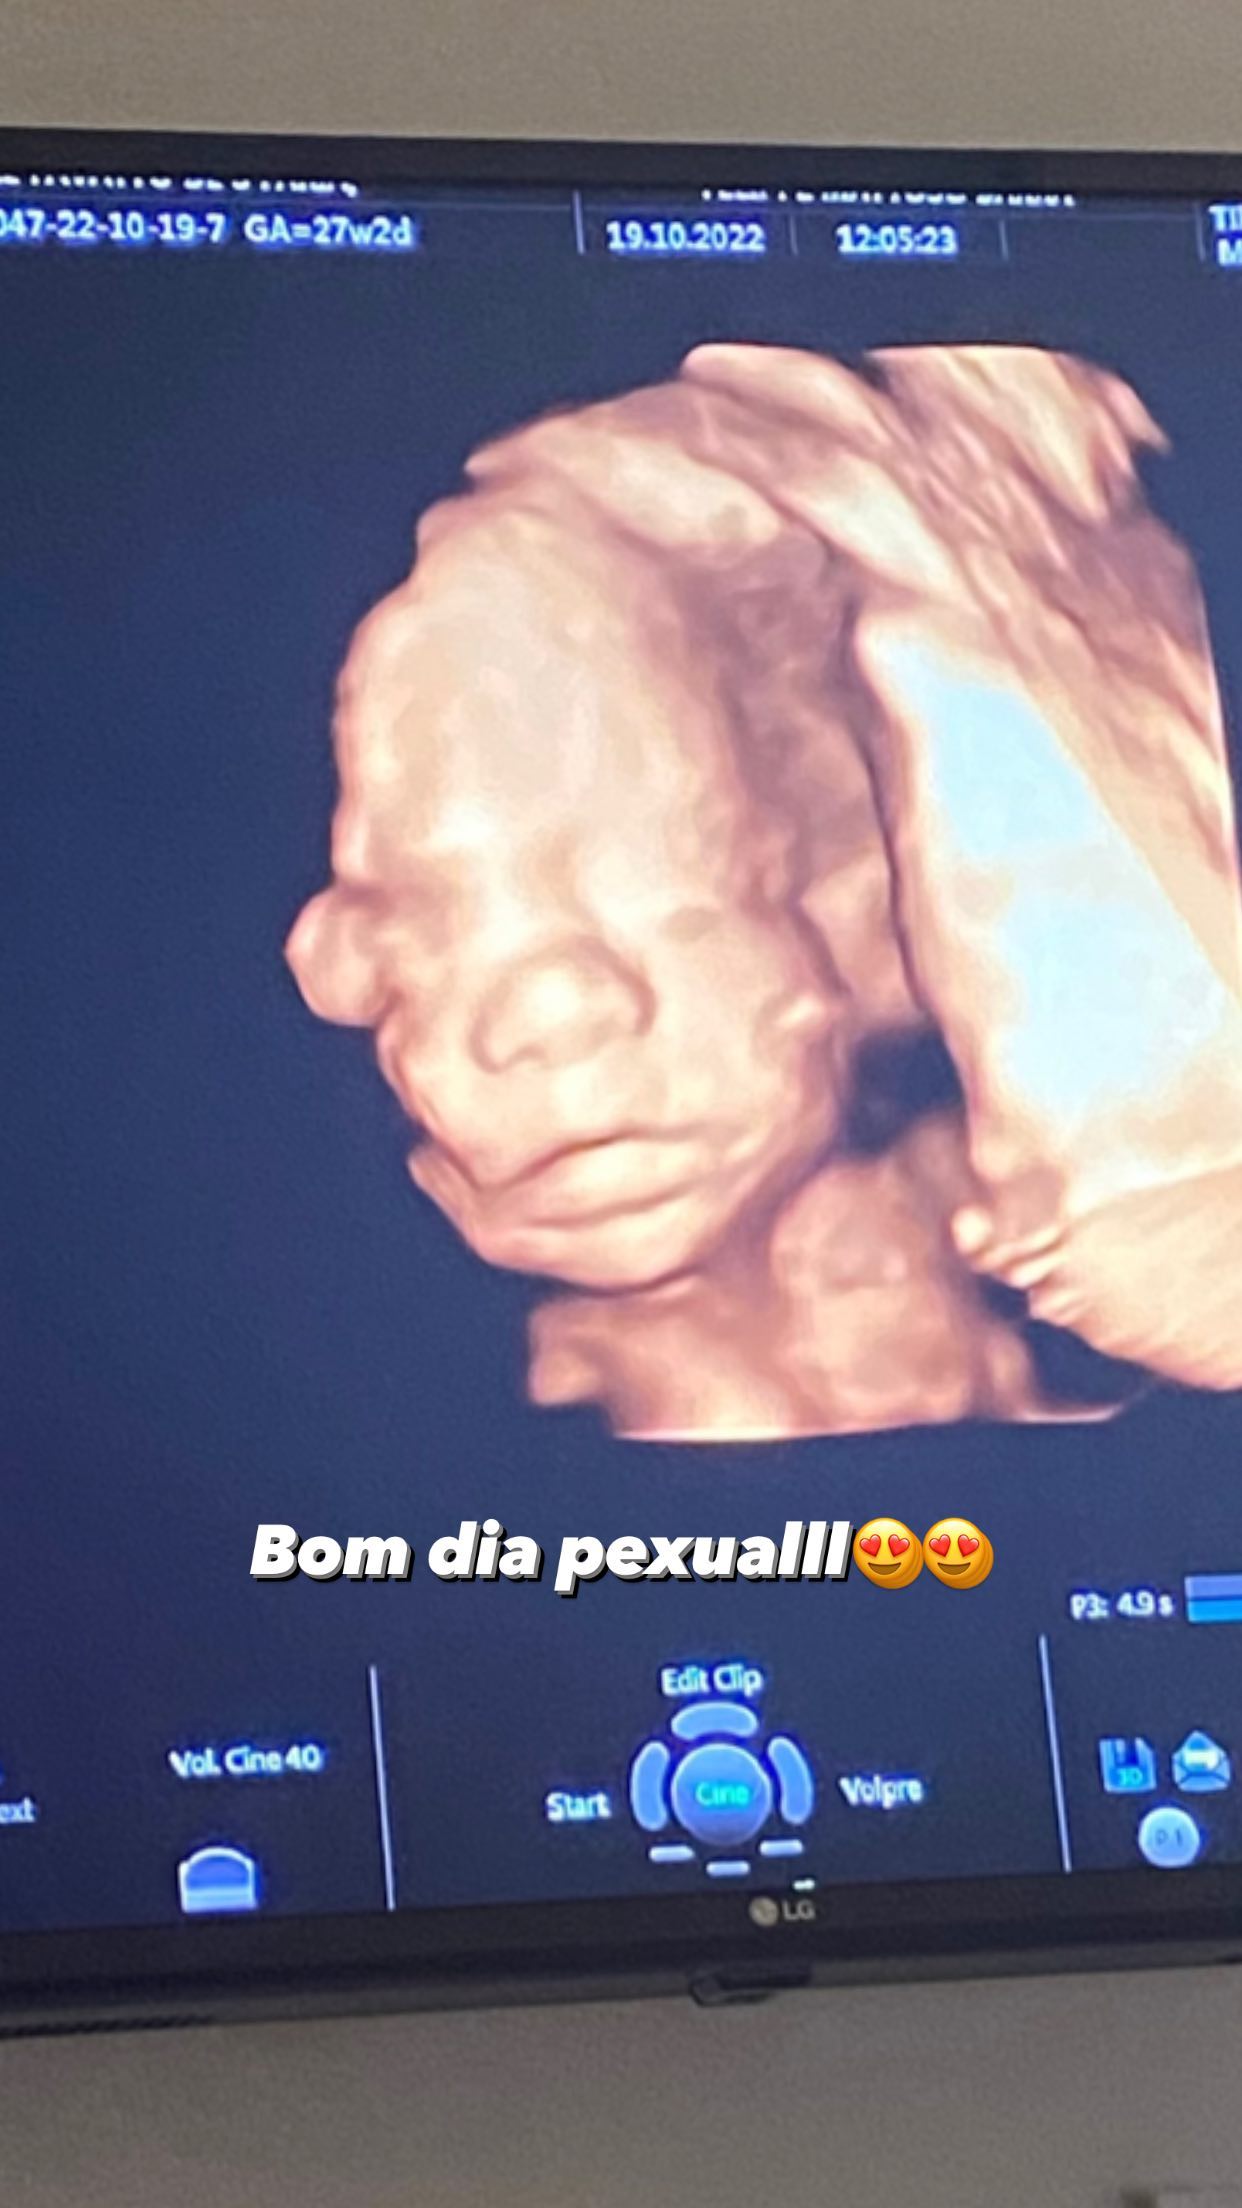 Grávida, filha de Romário mostra rostinho da bebê em ultrassom 3D: "Bom dia"